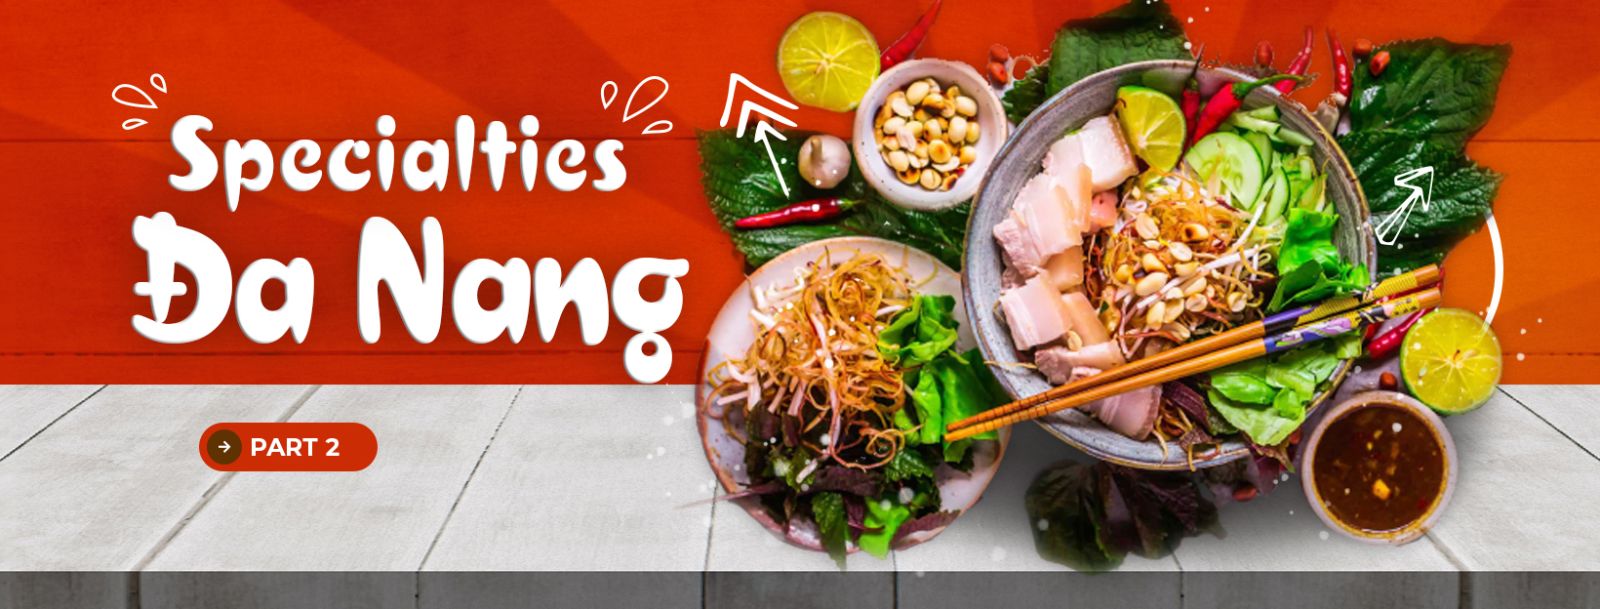 Da Nanng specialties (part 2)